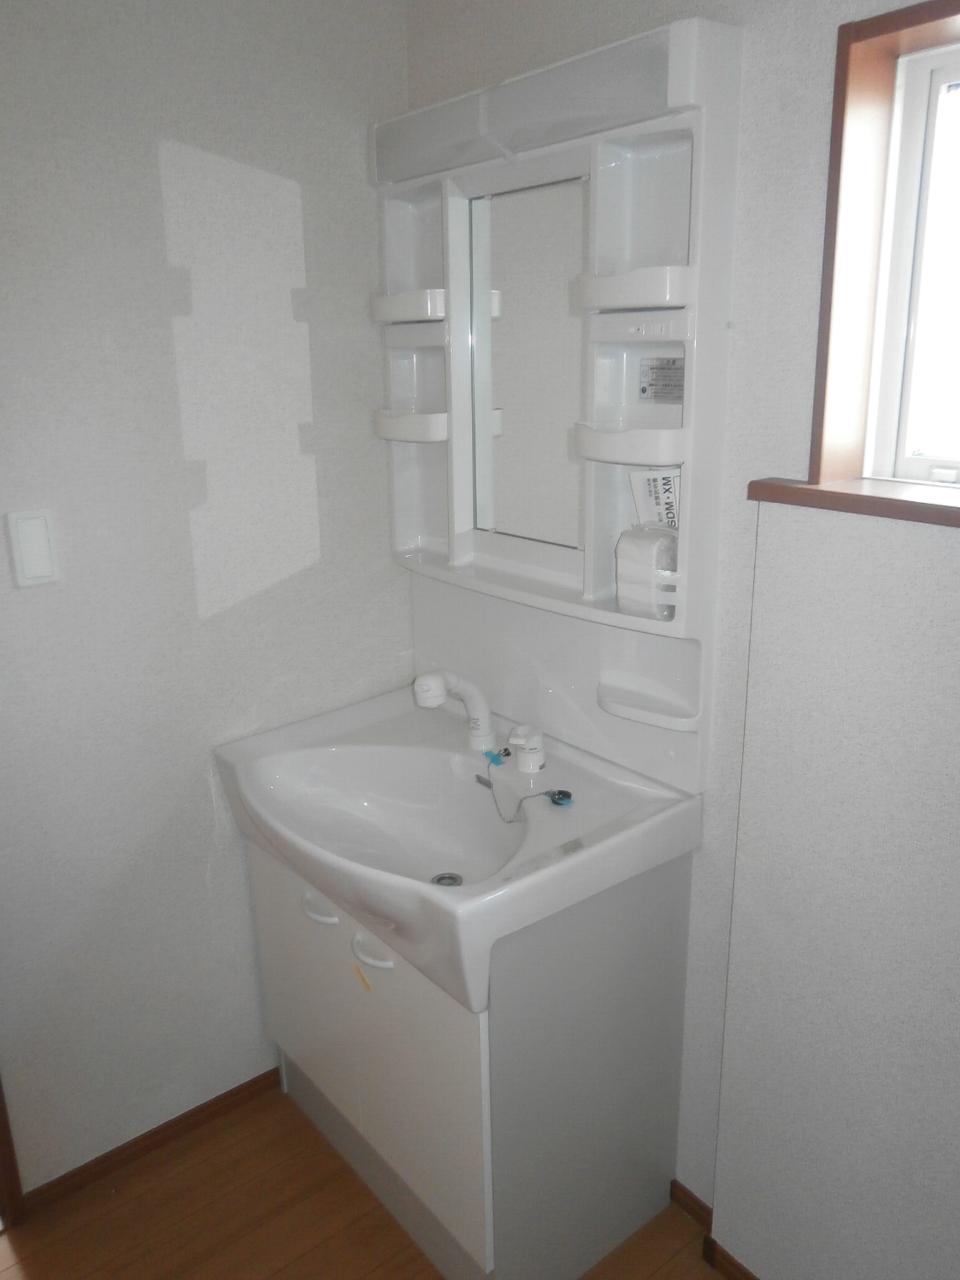 Wash basin, toilet. Building 3 (shampoo dresser) same specification! 